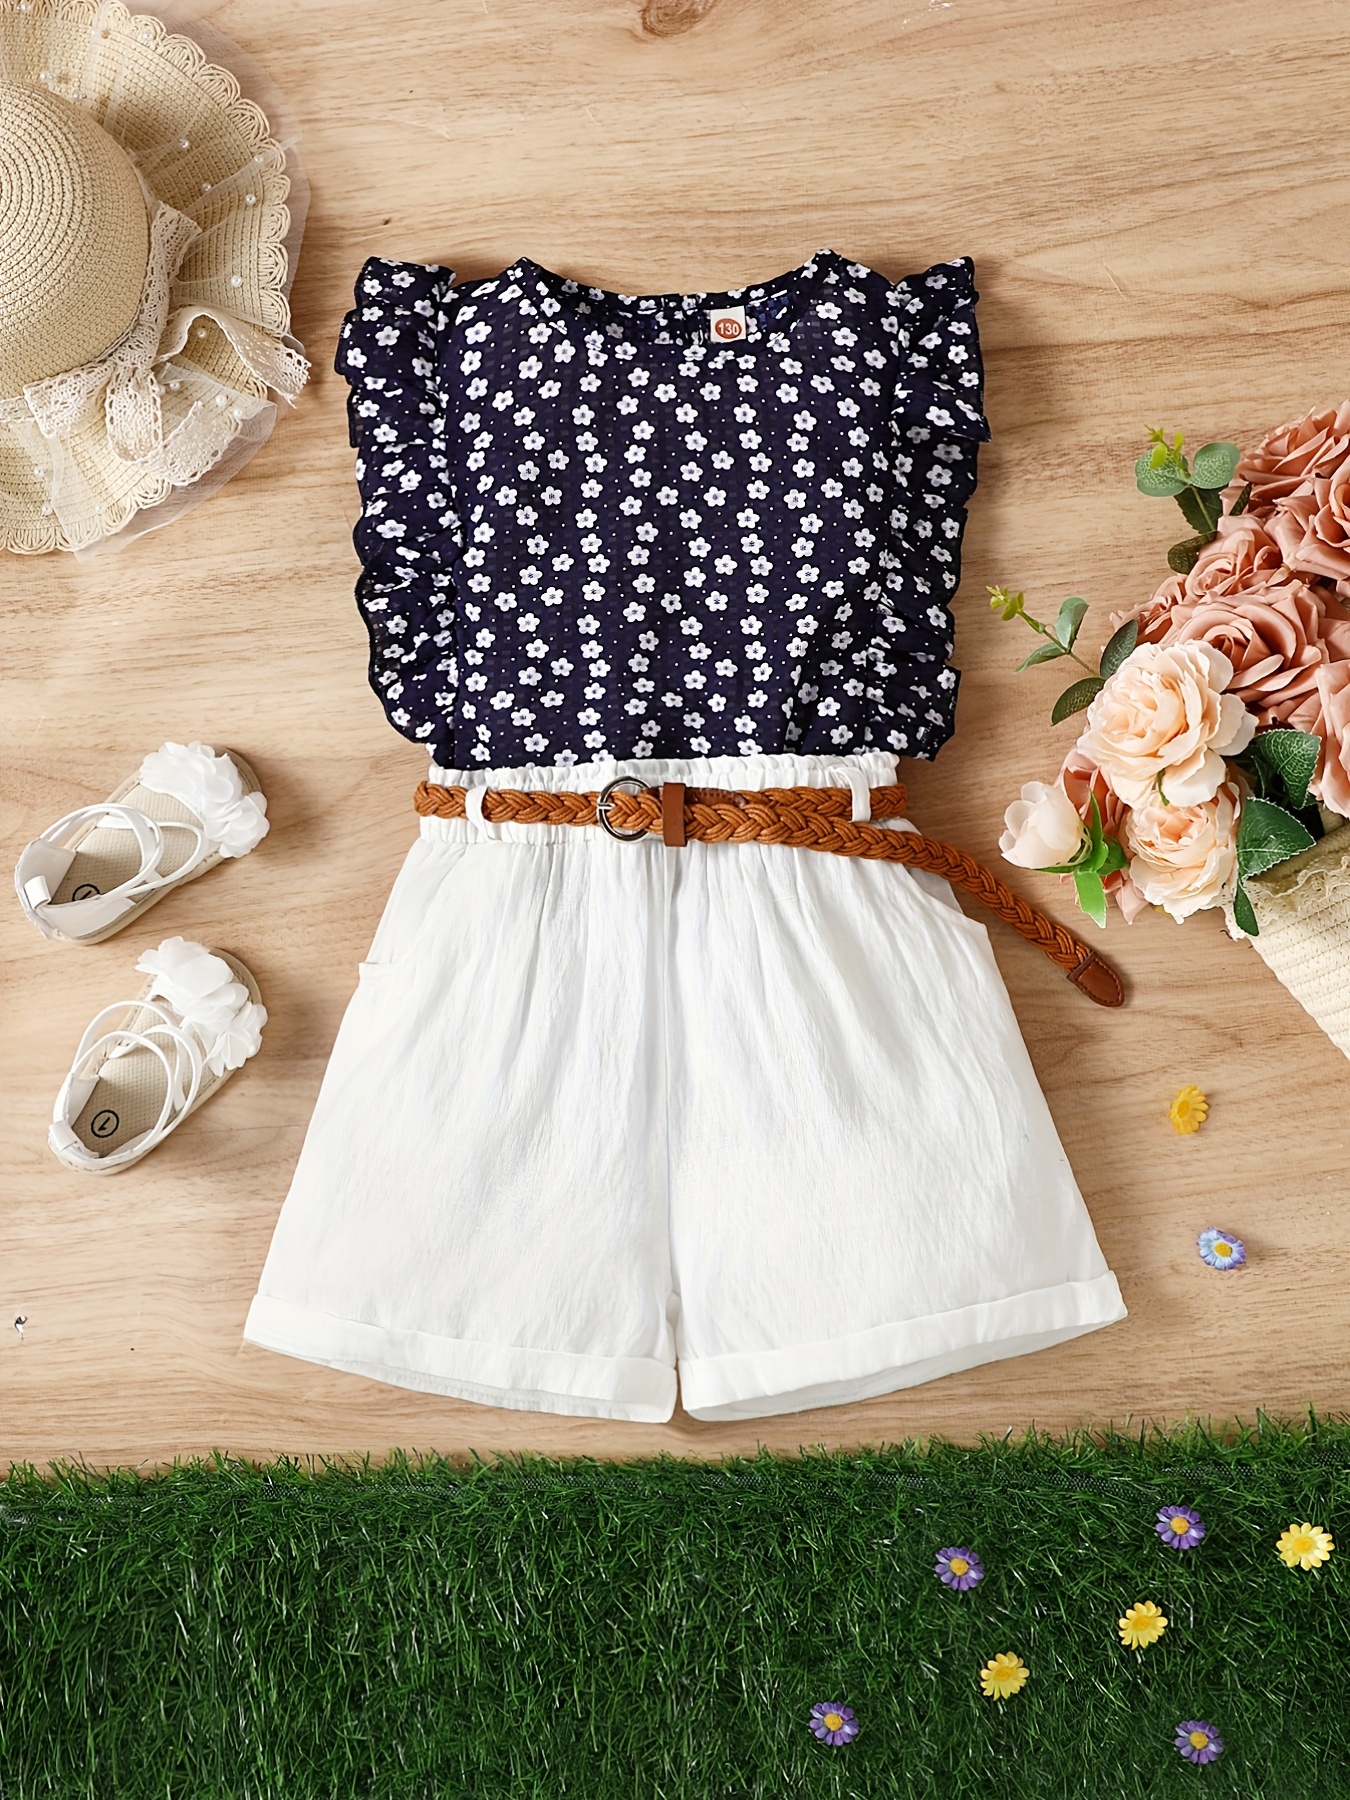 3pcs Girls Sleeveless Ruffle Trim Floral Blouse Top & Shorts & Belt Set  Kids Summer Clothes